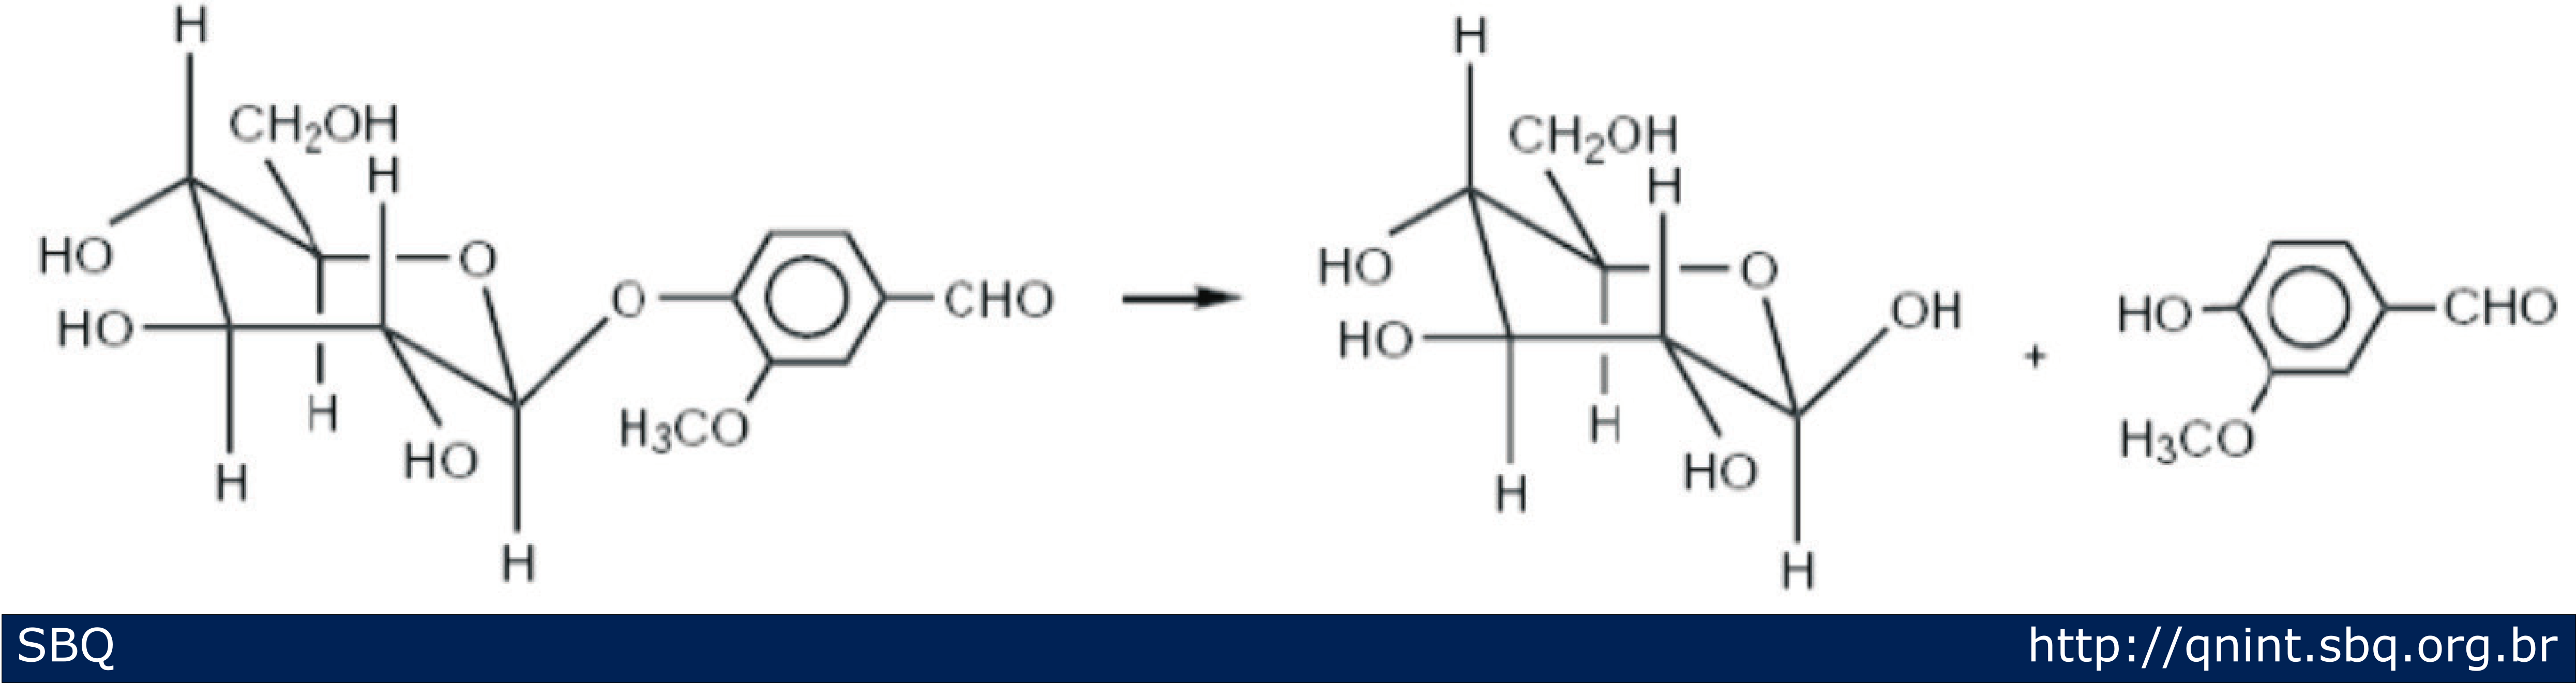 Figura 4: Esquema ilustrativo da hidrólise enzimática de gluco-vanilina em glucose e vanilina (Maurya e cols., 2007).   